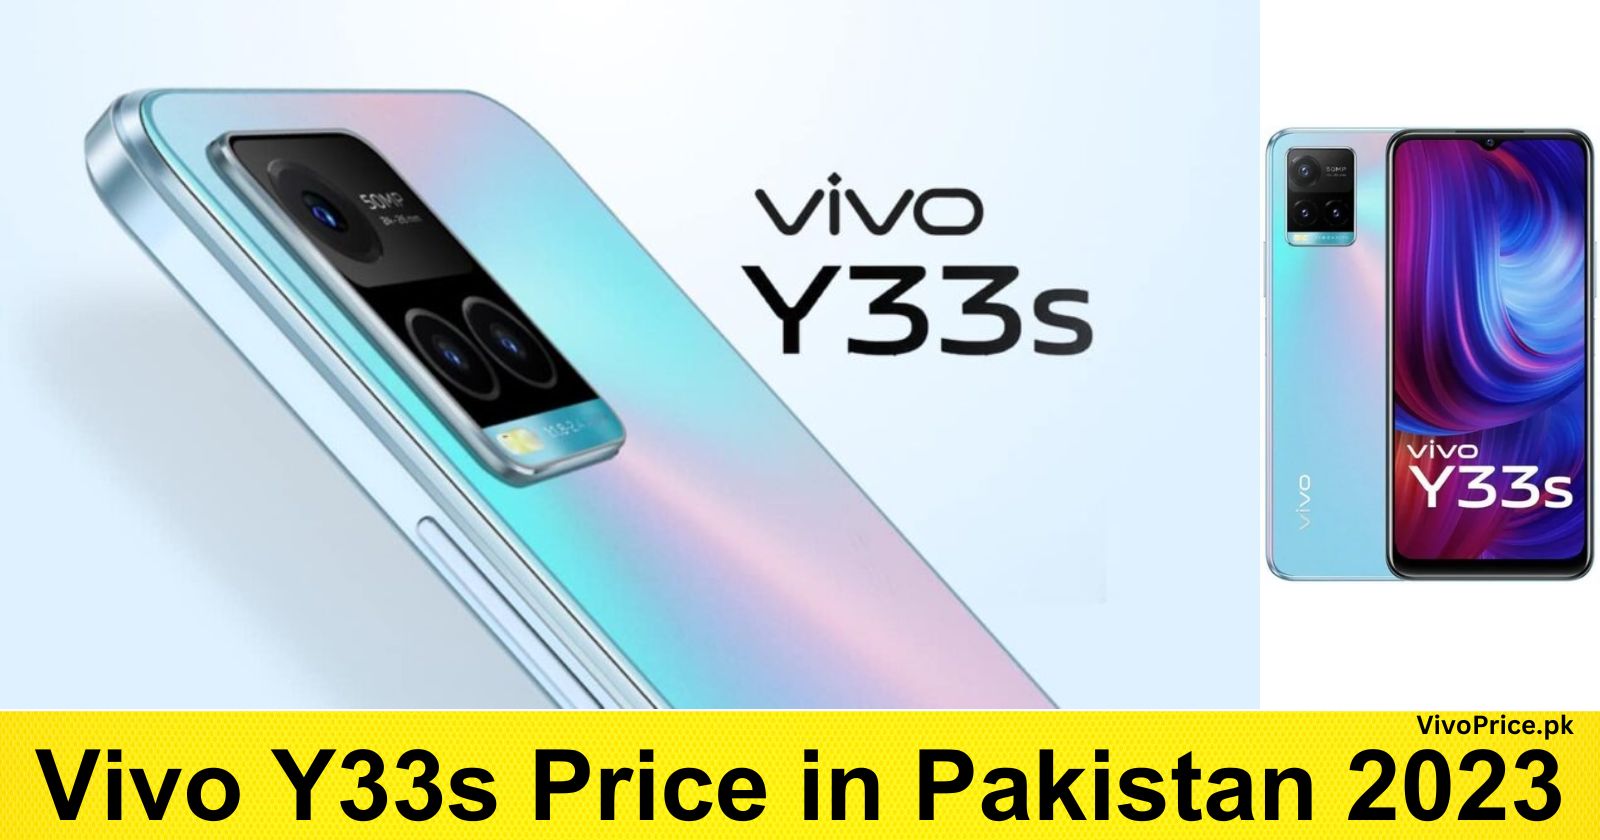 Vivo Y33s Price in Pakistan 2023 | VivoPrice.pk